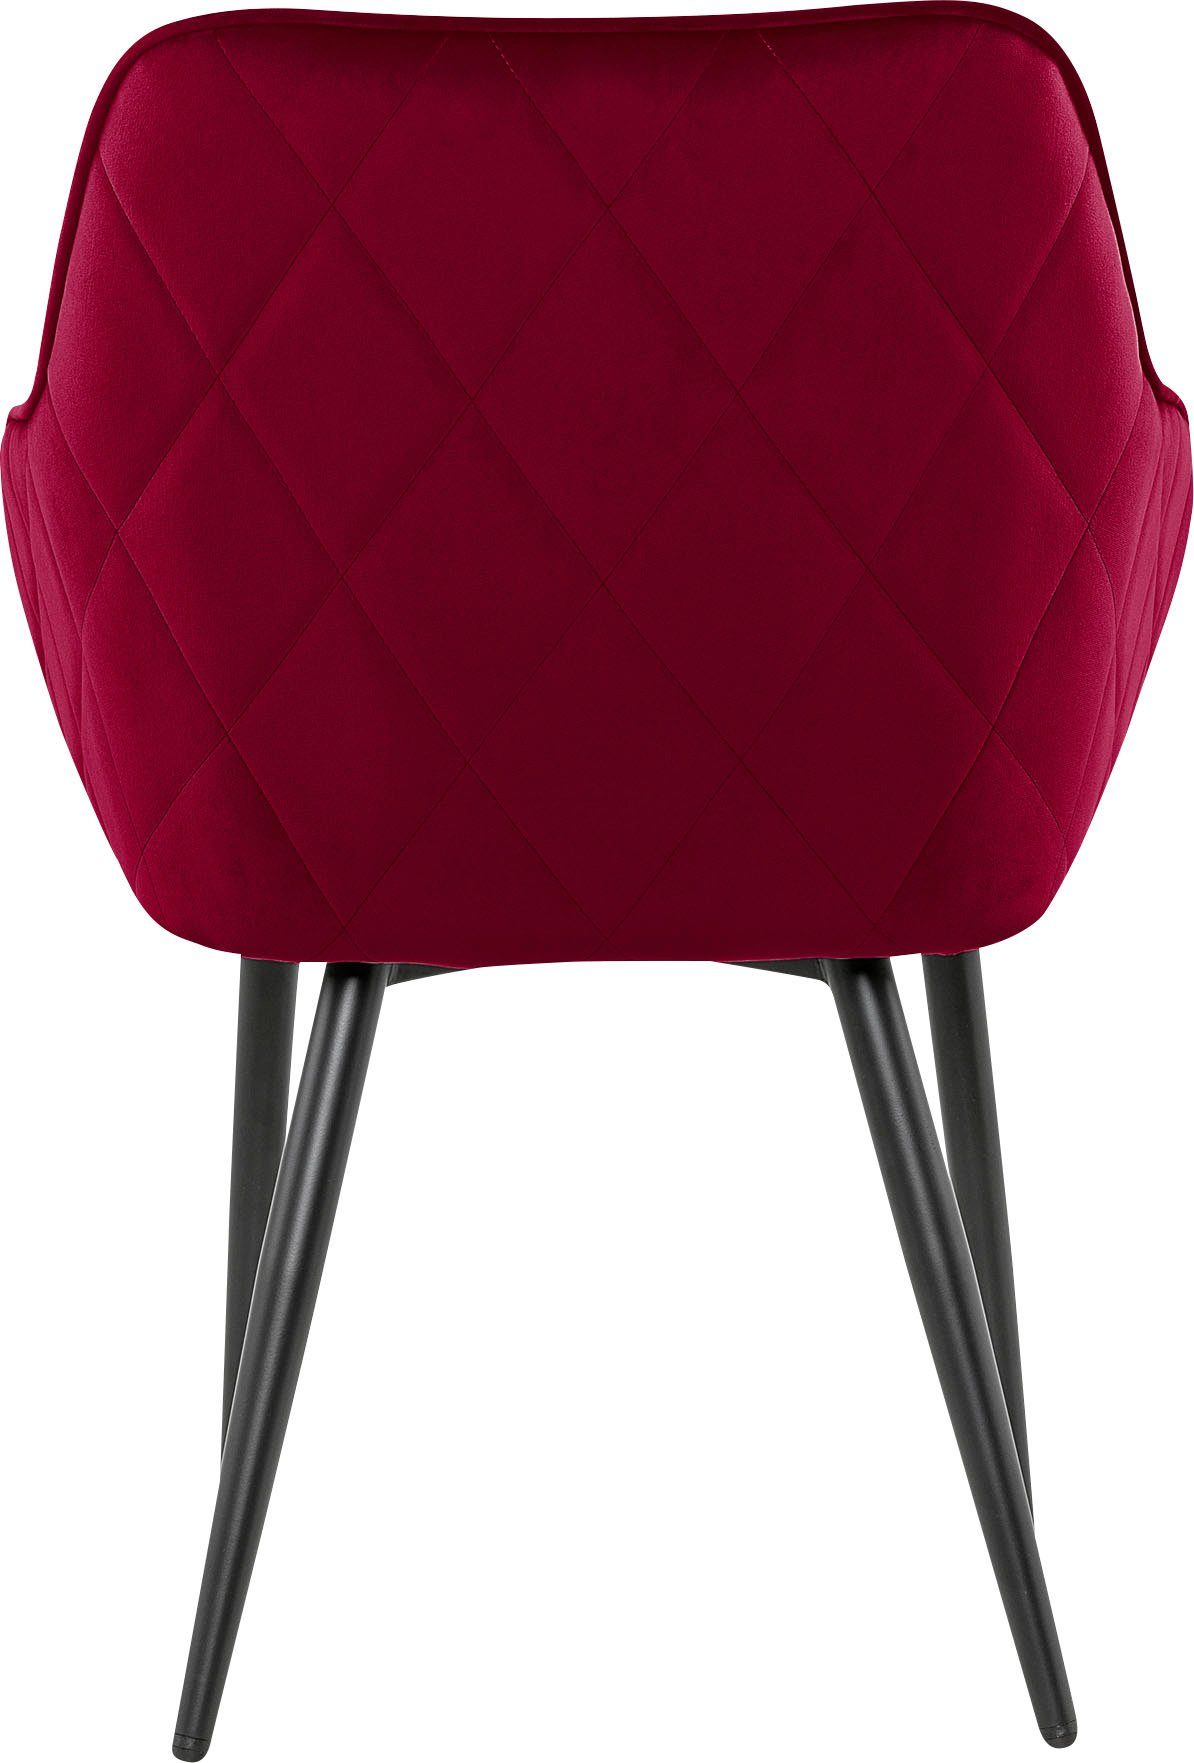 SalesFever Armlehnstuhl, mit Diamantsteppung auf der Rot/Schwarz Rückseite